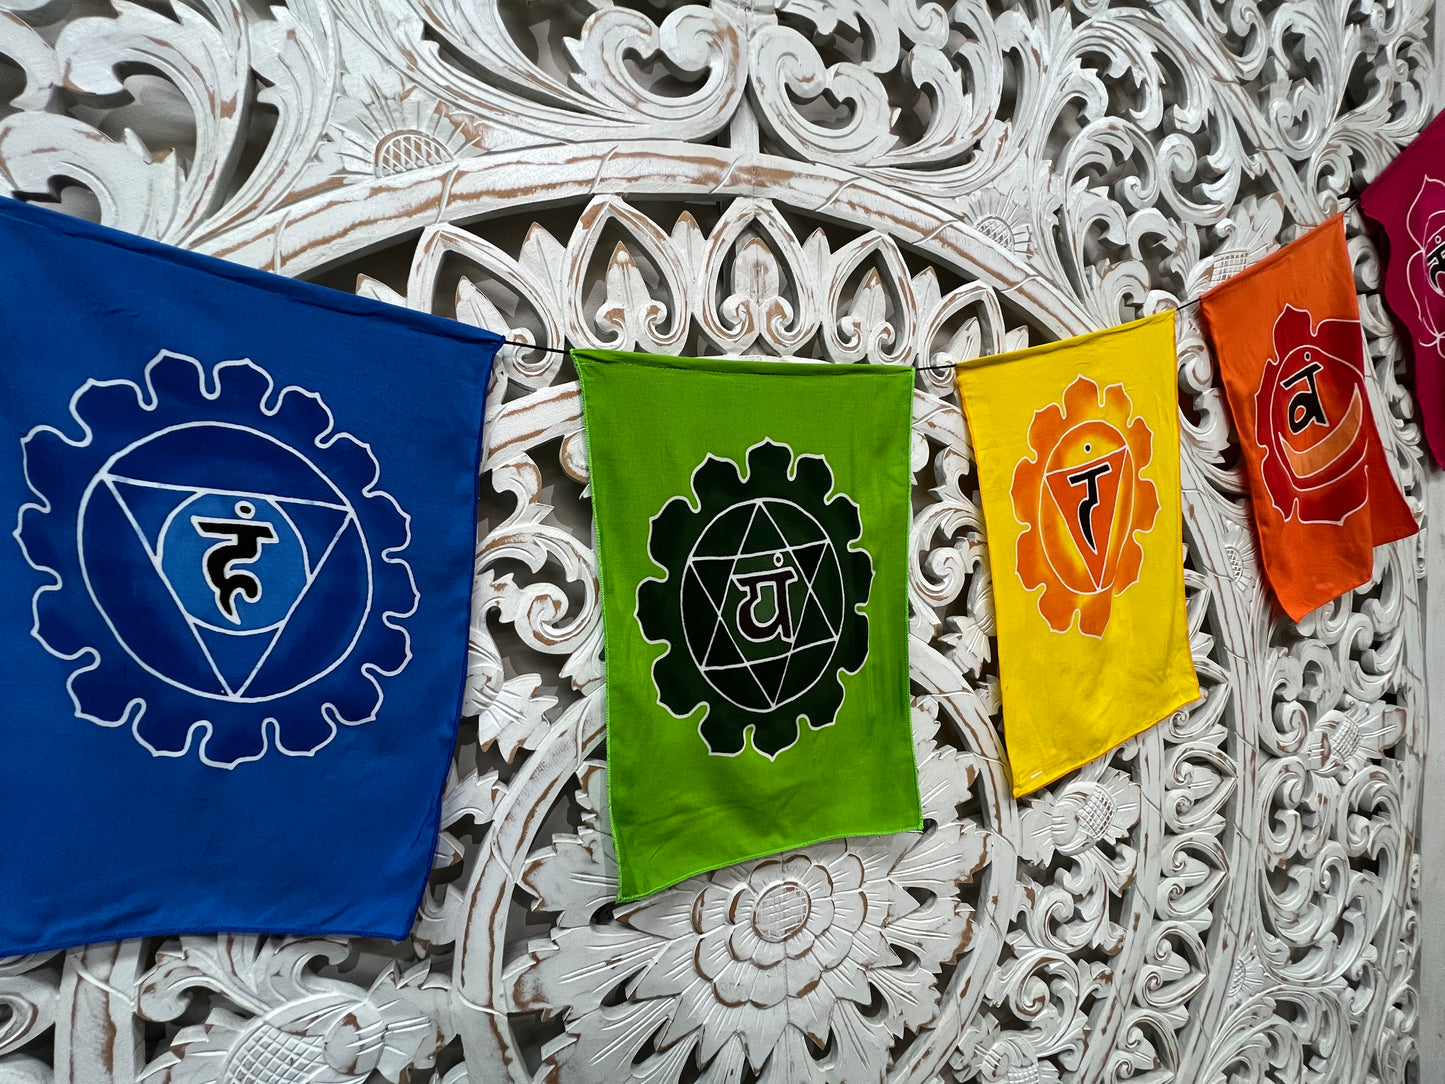 Hand Batiked Chakra Prayer Flags